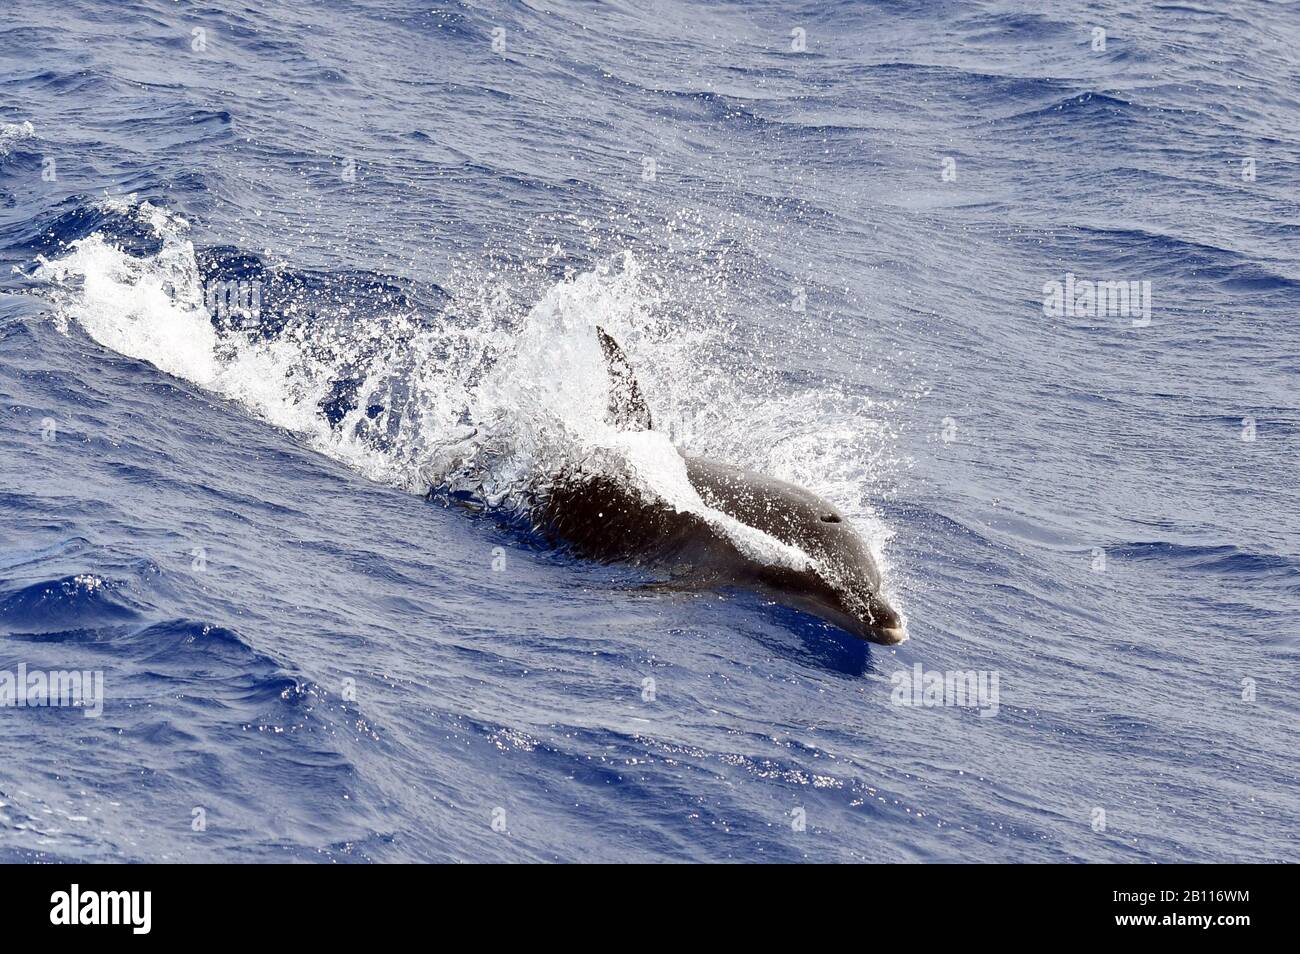 Dauphin à bec large, dauphin commun à bottle-ned (Tursiops truncatus), baignade dans l'océan ouvert, océan Atlantique Banque D'Images